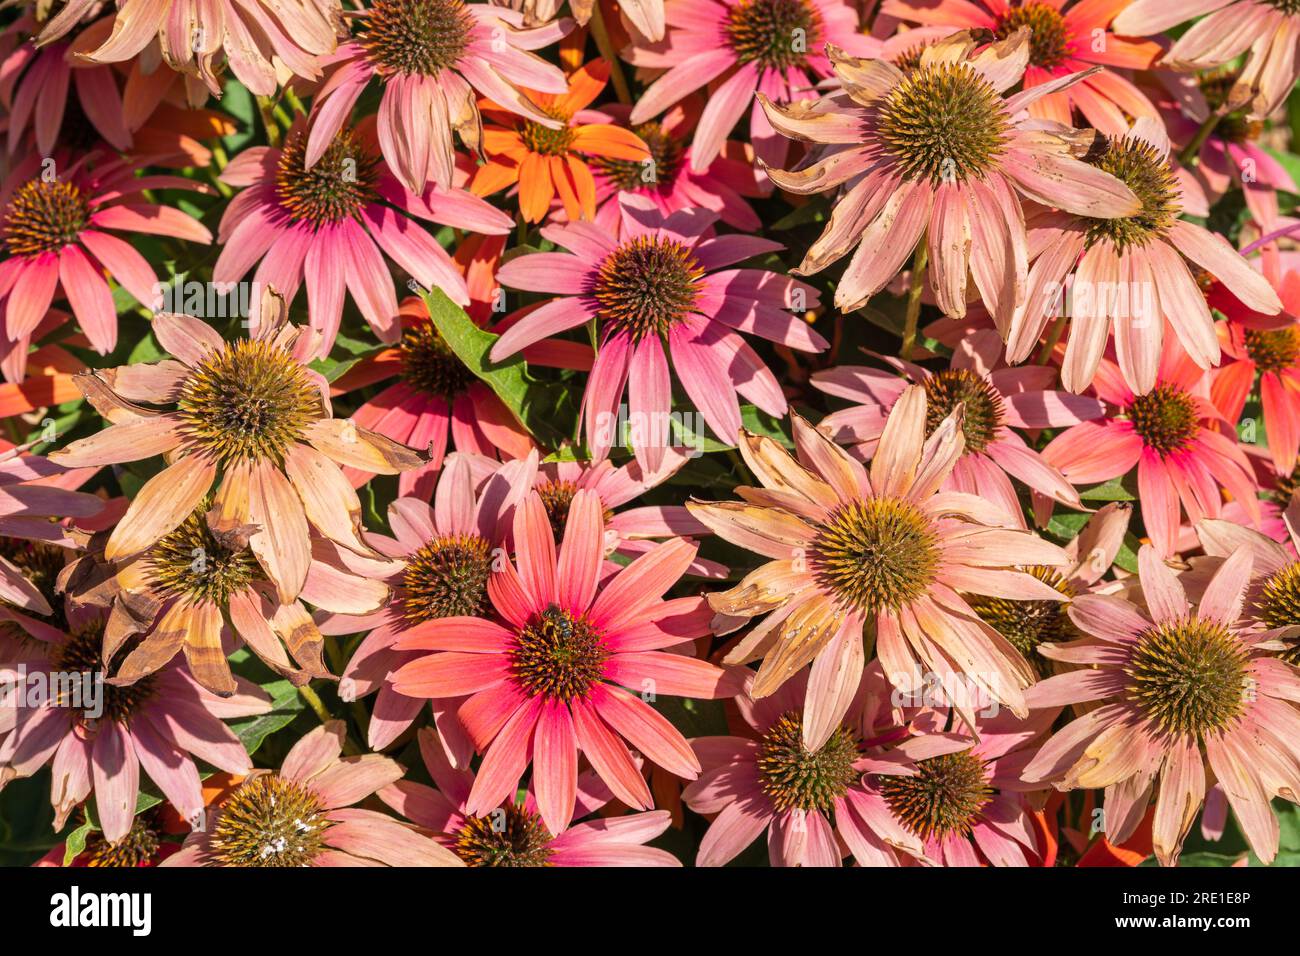 Vista ravvicinata dall'alto dei fiori rosa arancio dell'echinacea purpurea, nota anche come coneflower viola o fiore del riccio che fiorisce all'aperto alla luce del sole Foto Stock